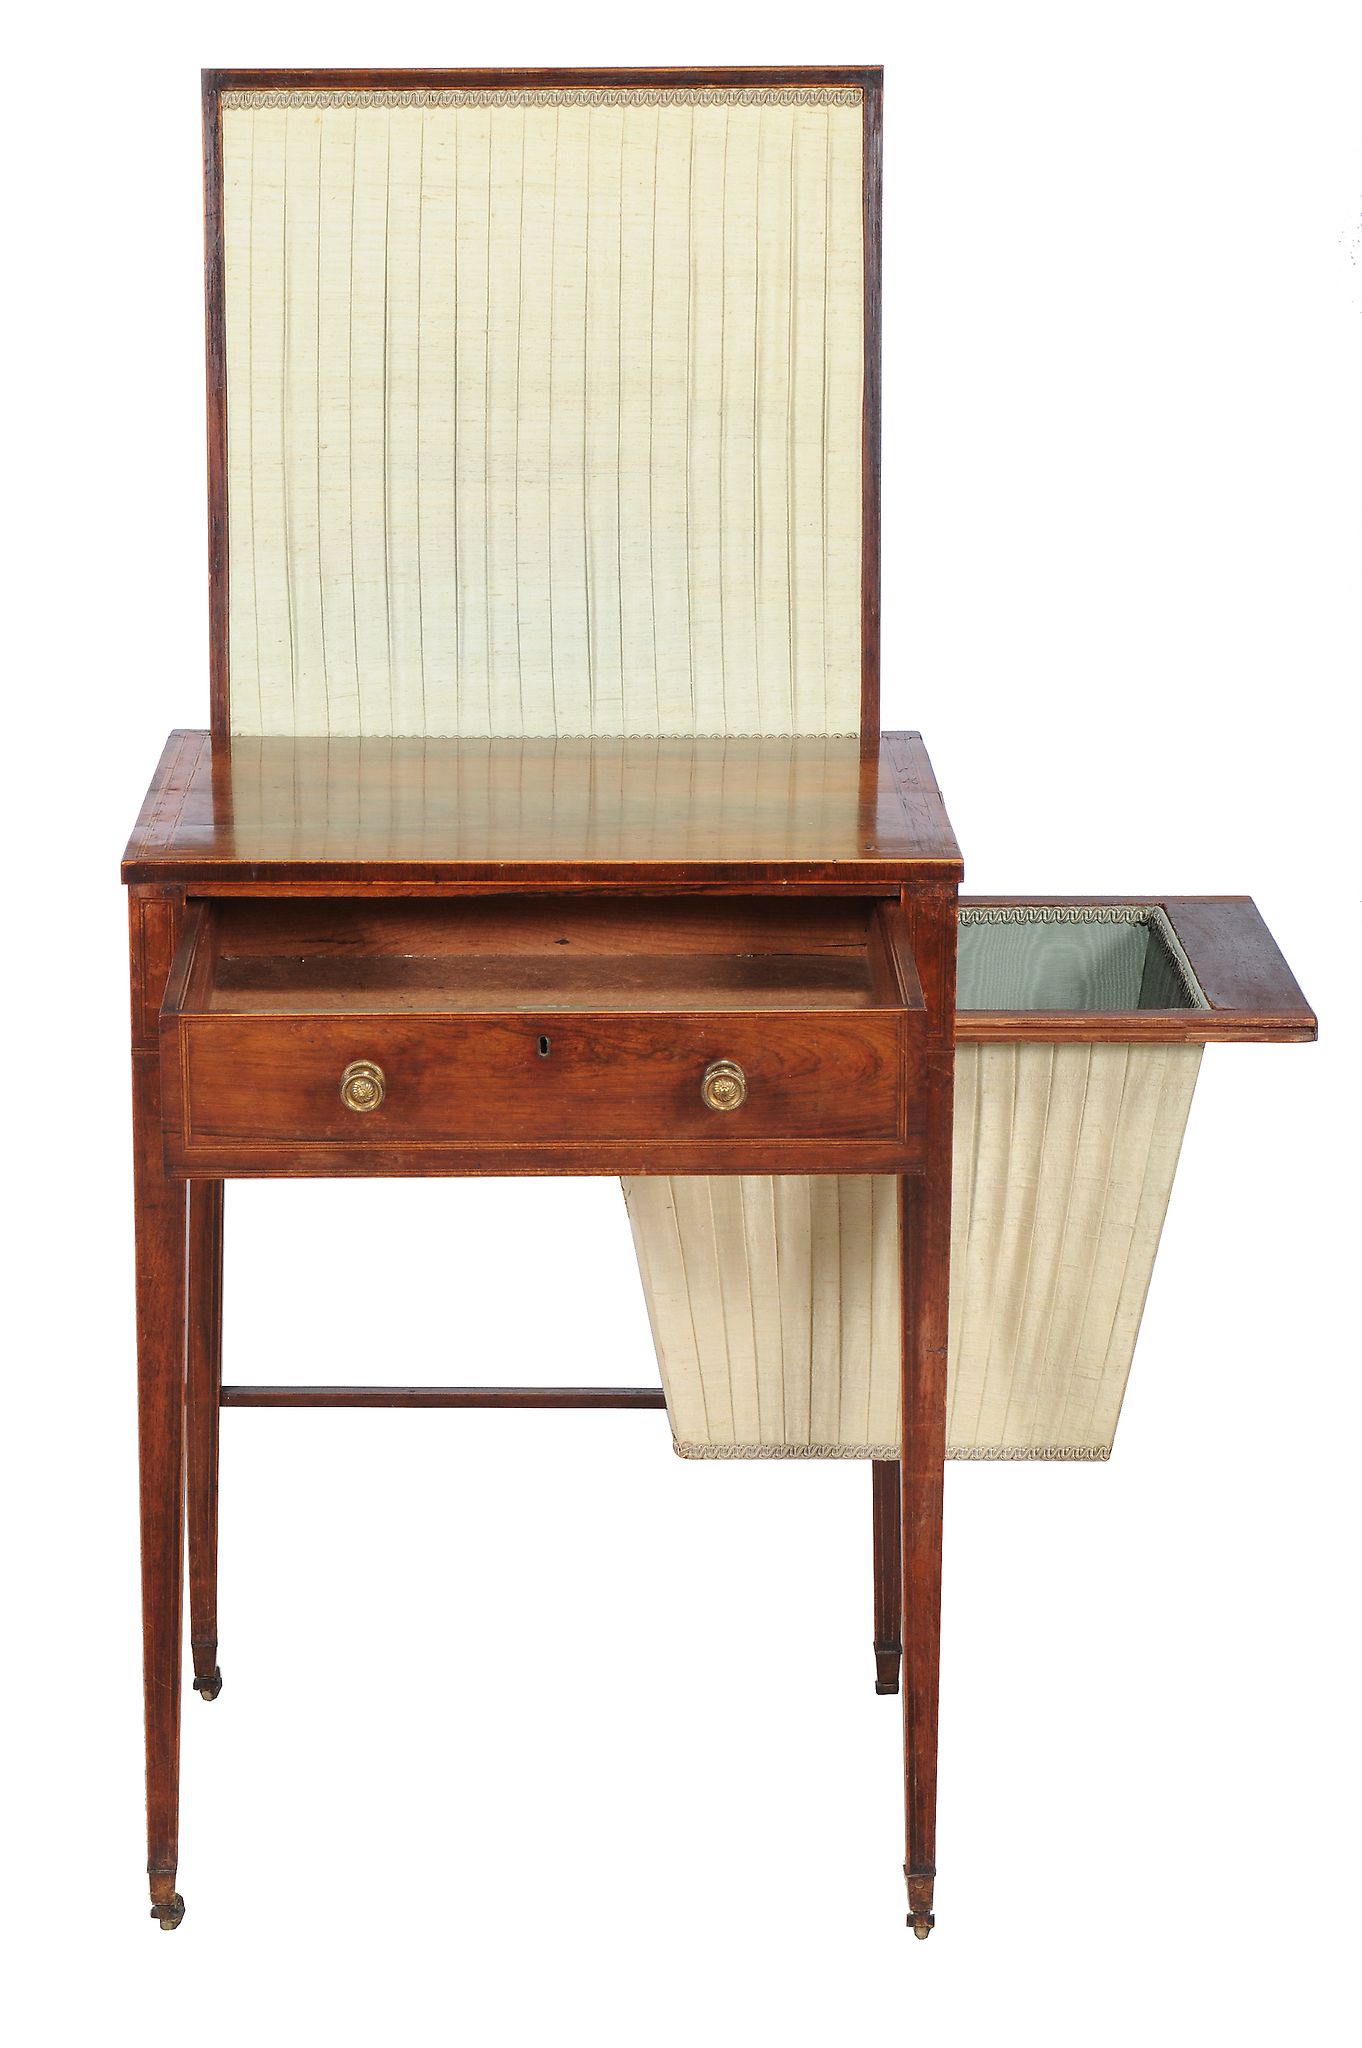 Ω A Regency rosewood and line inlaid work table , circa 1815, possibly Scottish, the single drawer - Image 3 of 3